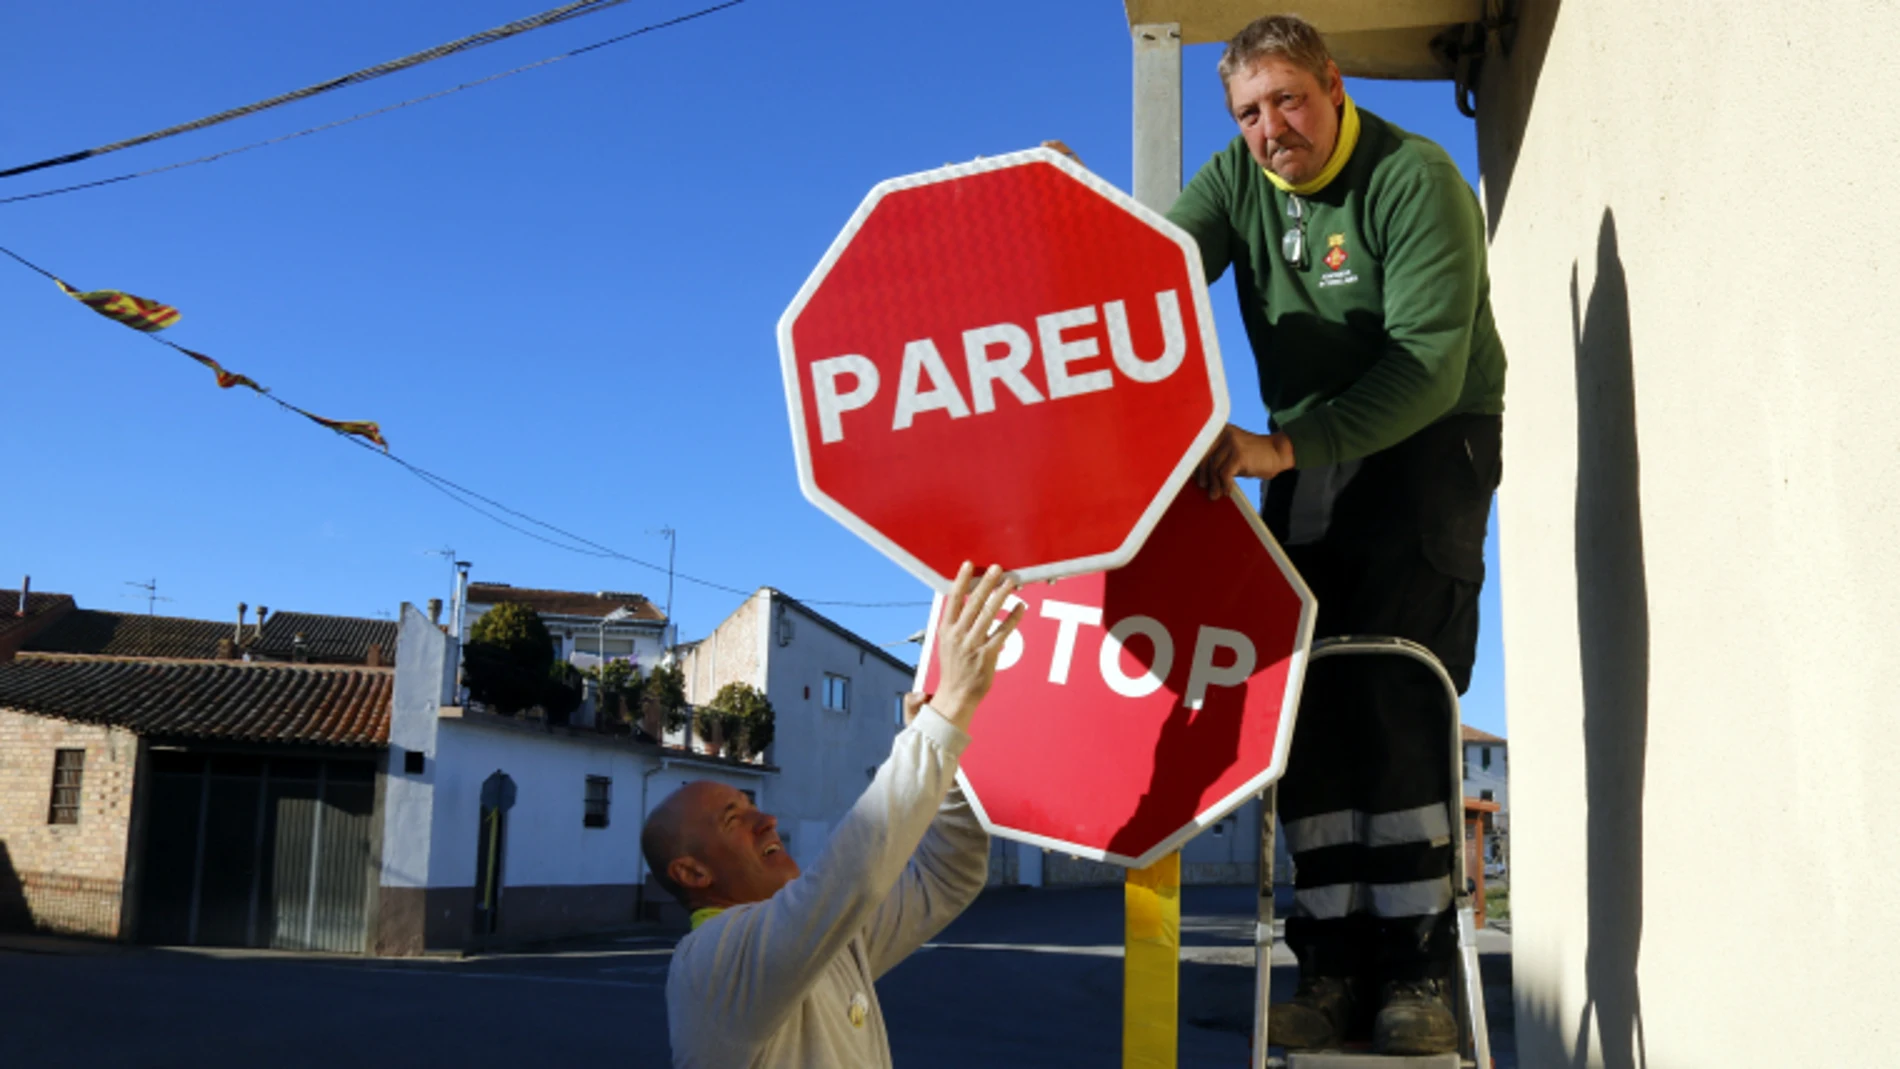 La señal de ‘Stop’ está siendo modificada en las calles de Torrelameu por la de ‘Pareu’ / LleidaDiario.cat